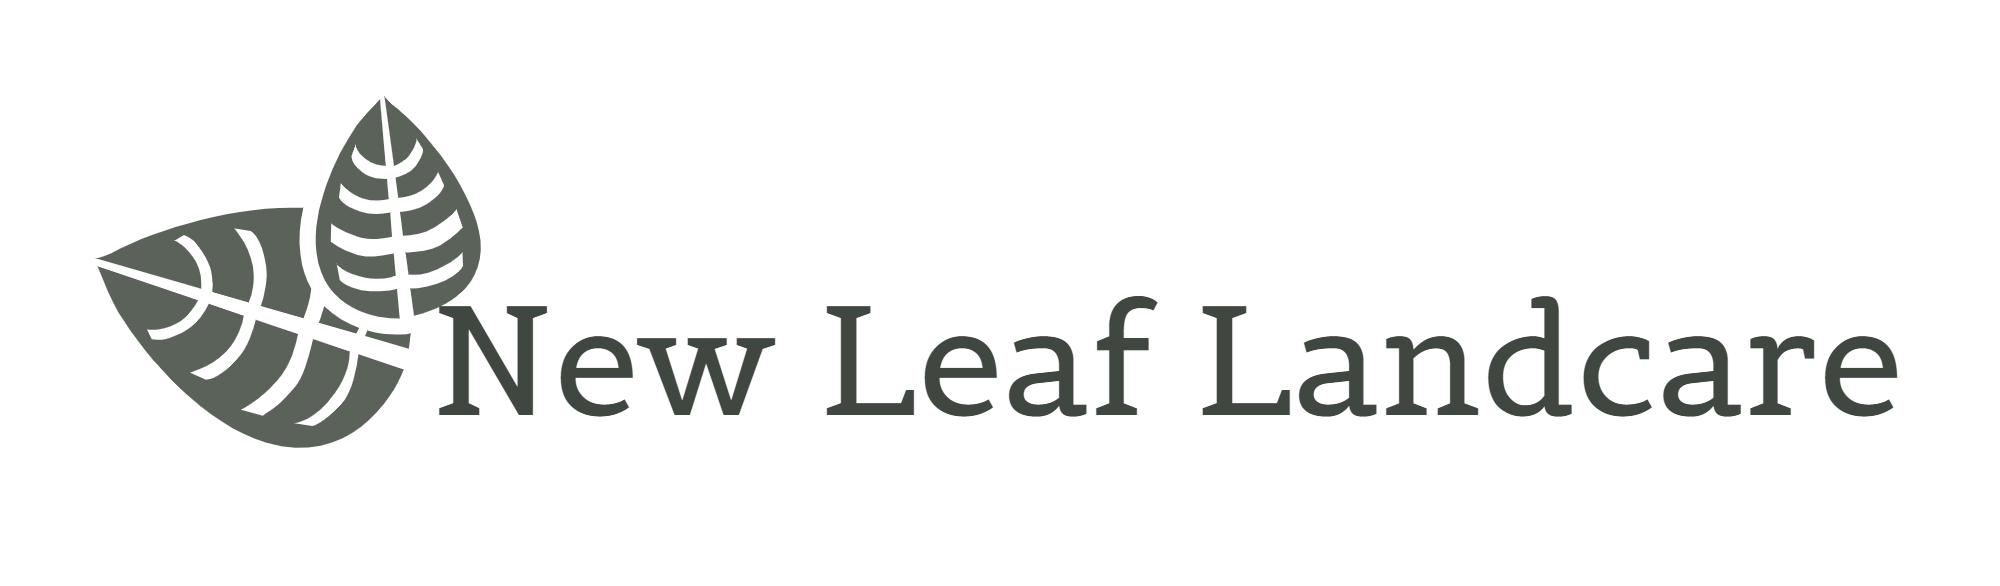 New Leaf Landcare